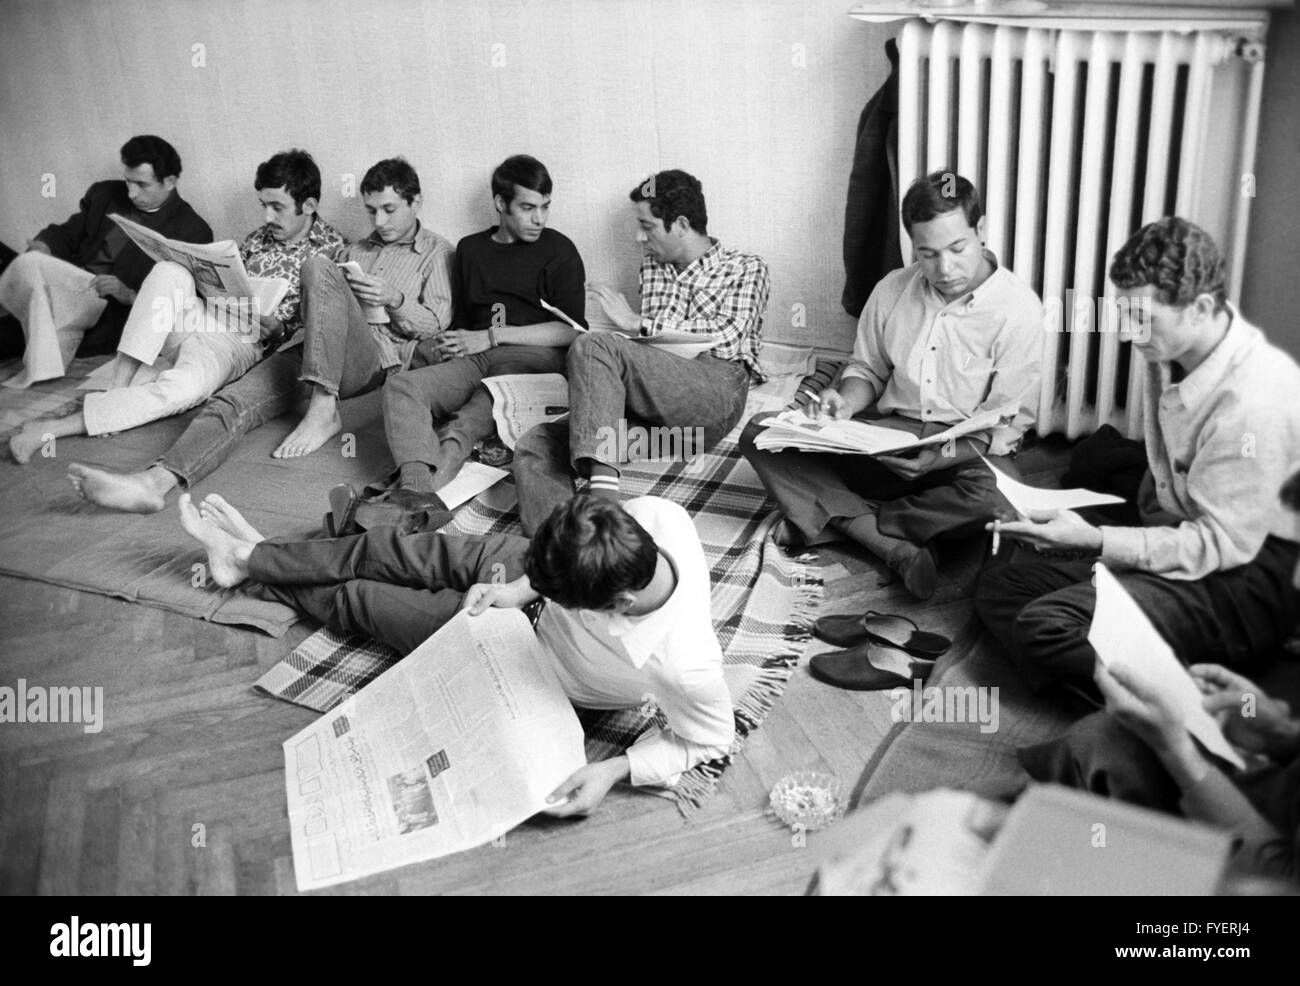 Une partie de l'être les étudiants en grève de la faim. Pour renforcer leur demande de libération du prisonnier politique en Iraq, 16 ans, deux irakiens et libyens deux soudanais des étudiants de l'Arabe Club à Hambourg ont saisi deux jours de grève de la faim le 19 juillet 1968. Banque D'Images